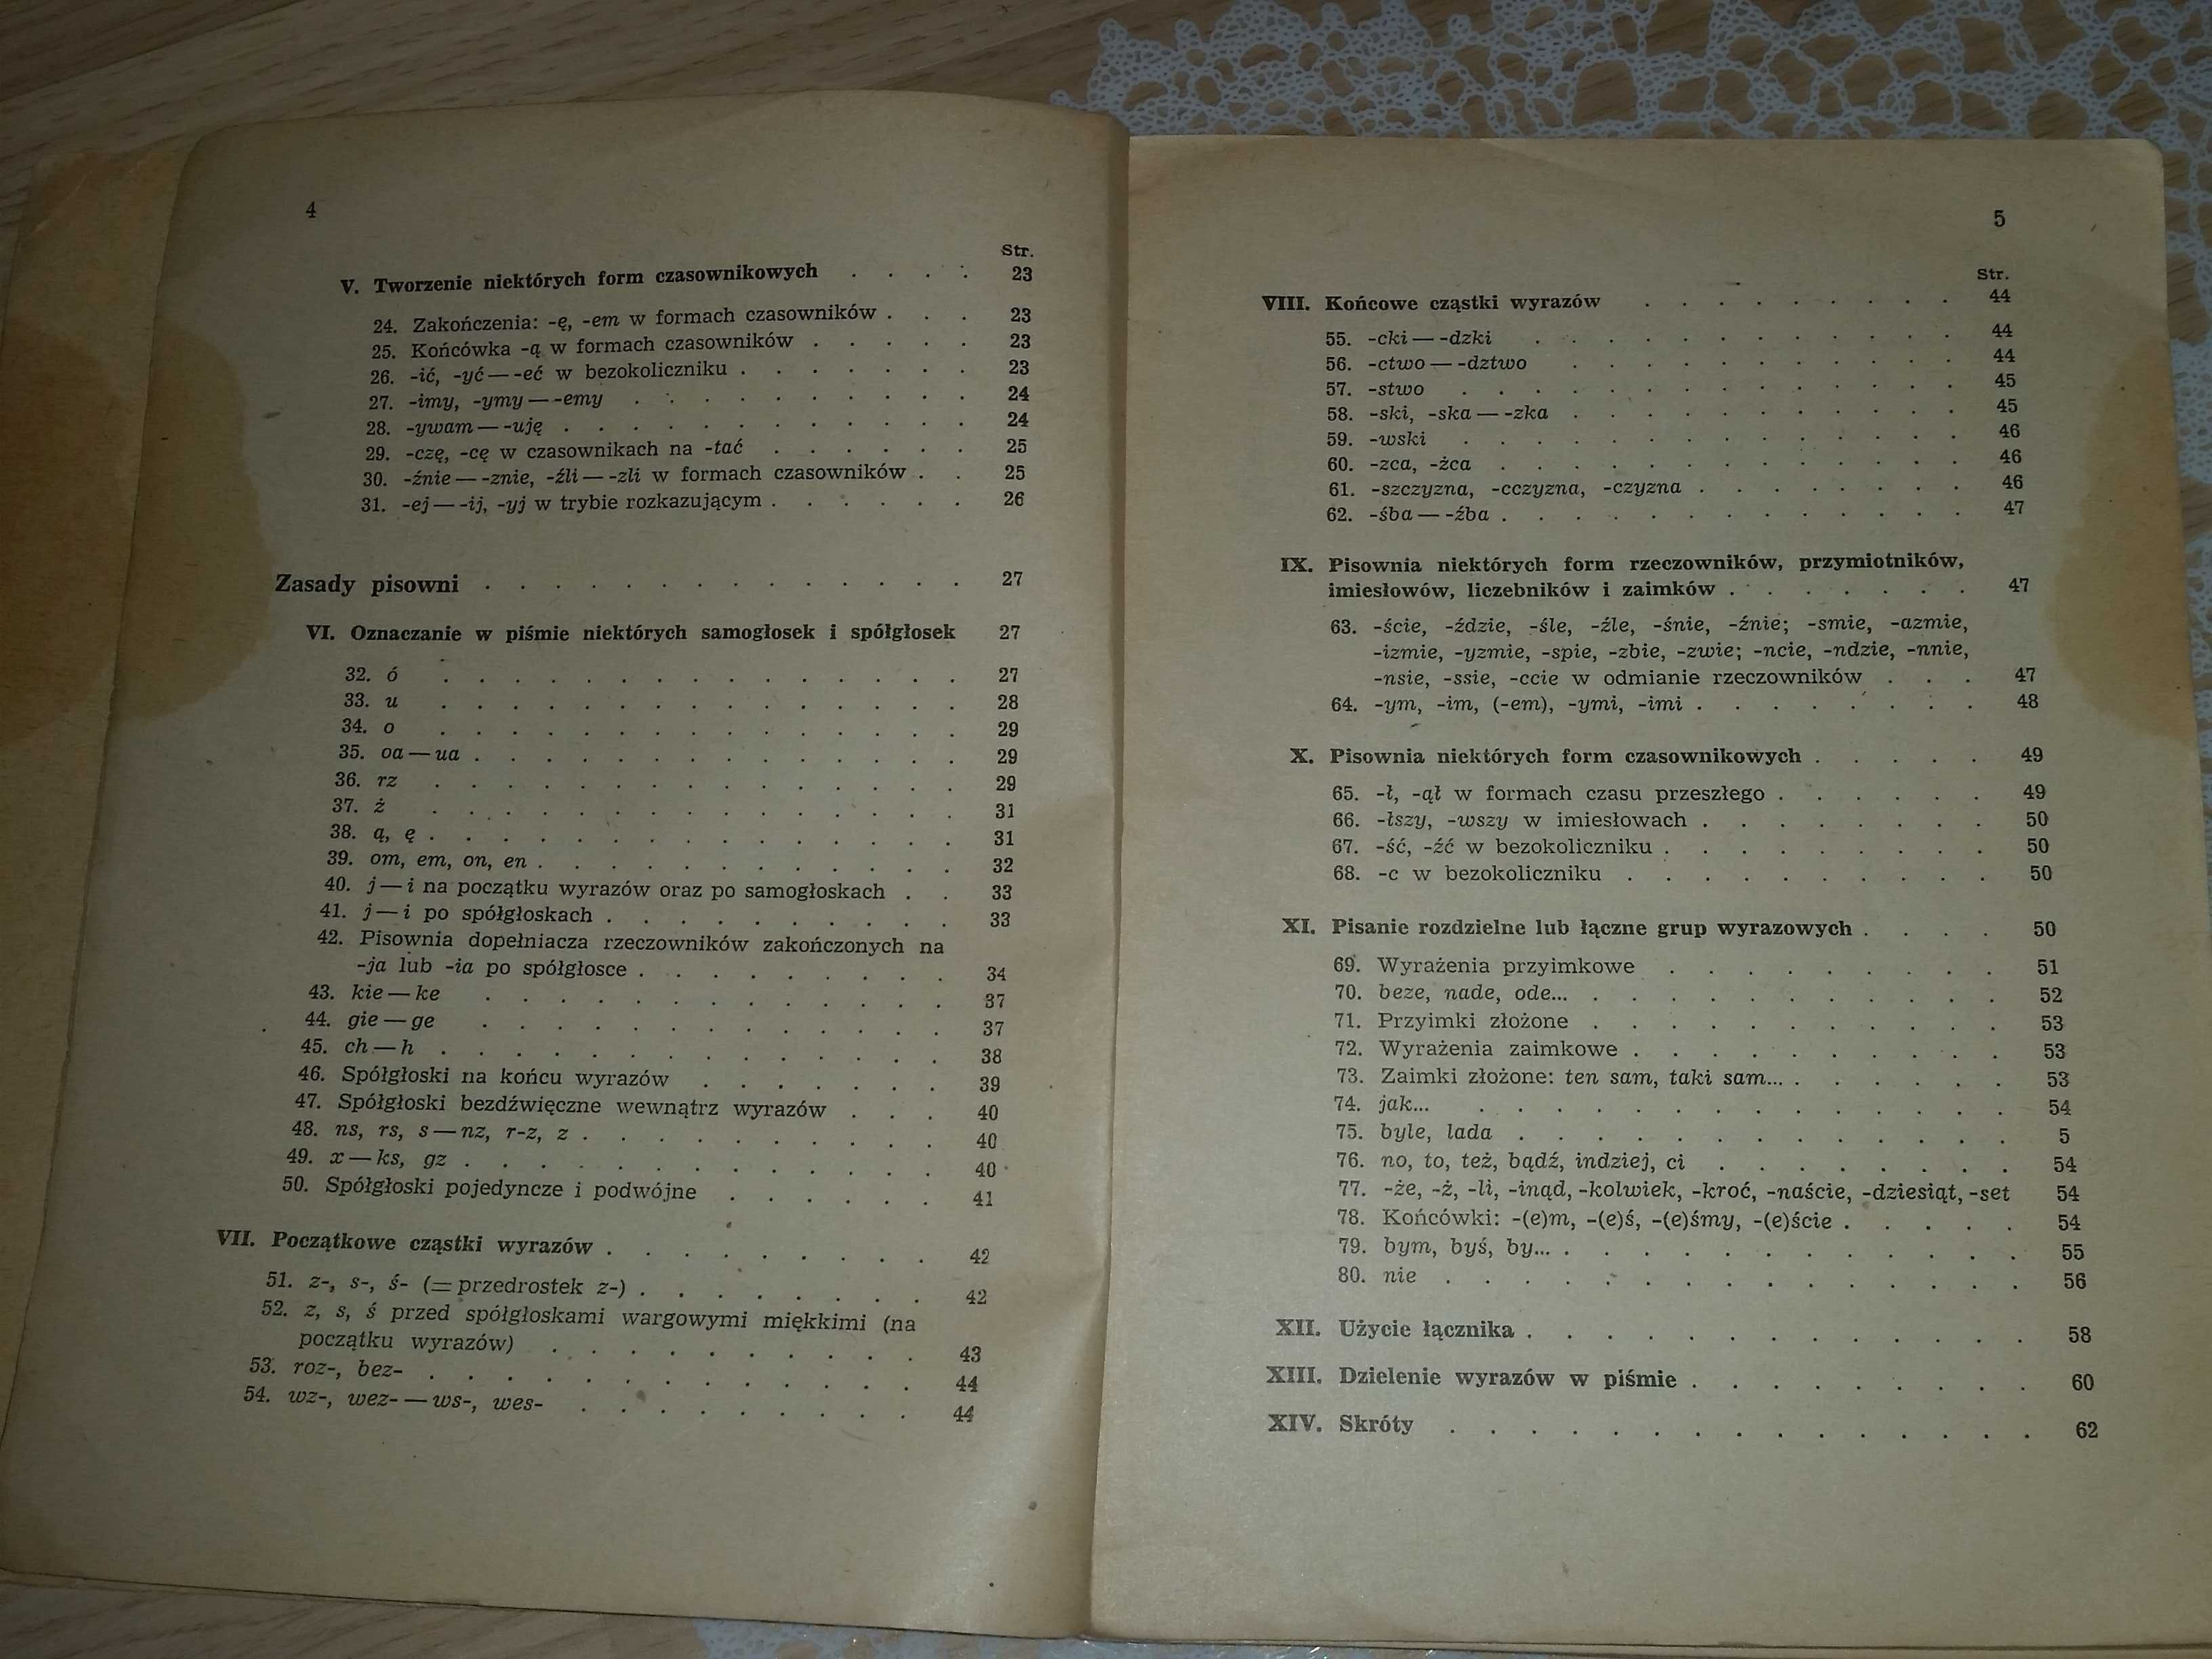 1954 Zasady pisowni polskiej i interpunkcji ze słownikiem ortog